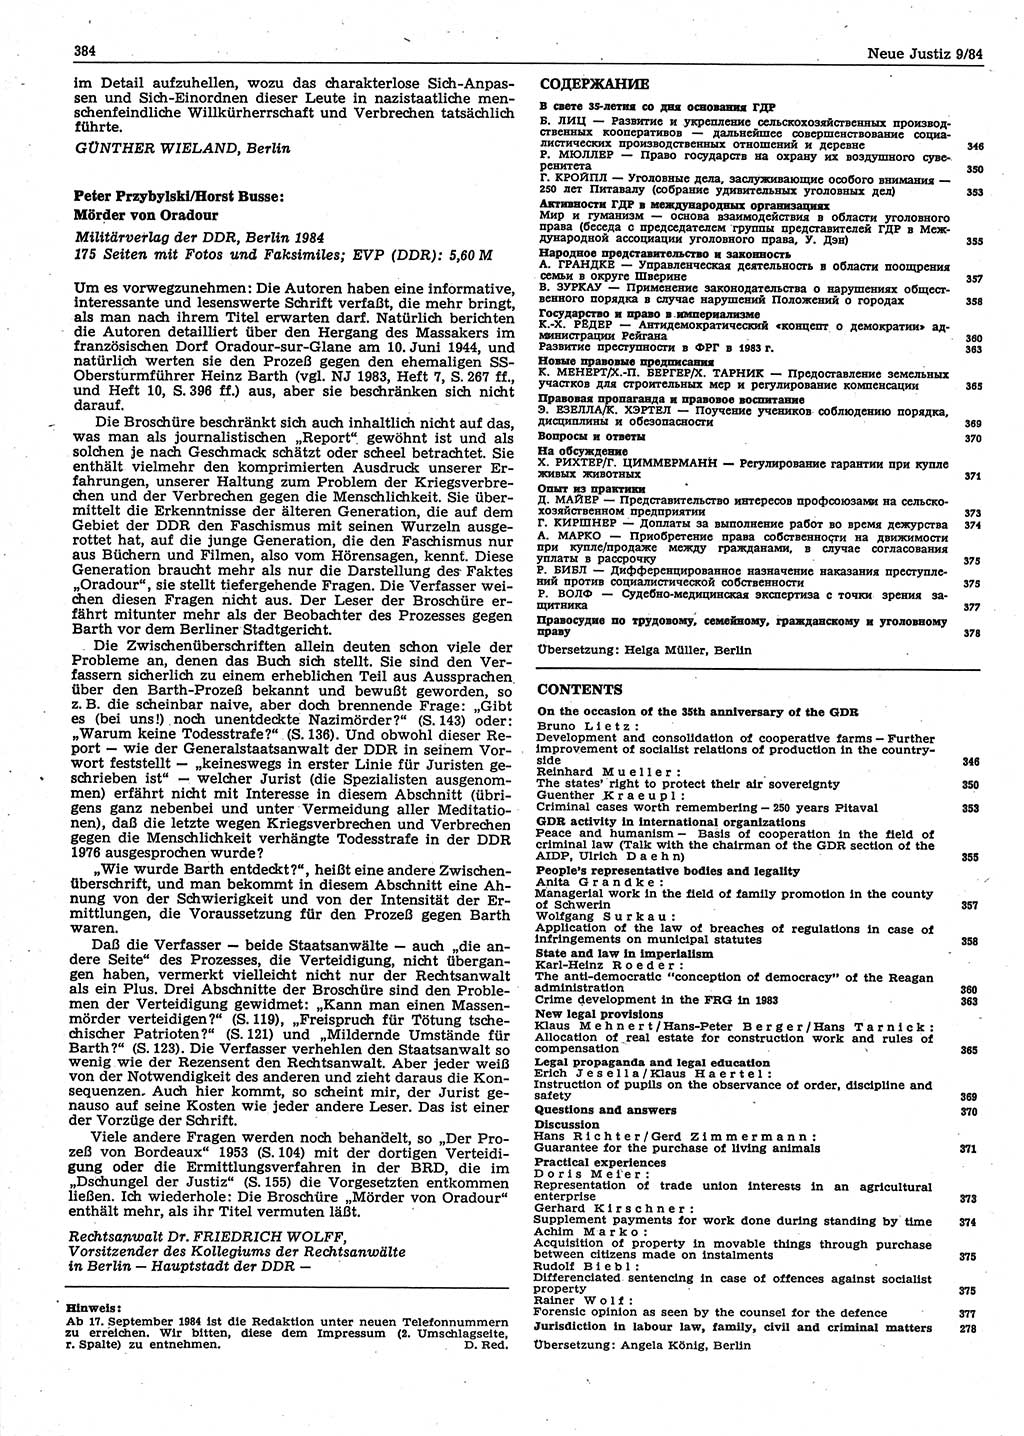 Neue Justiz (NJ), Zeitschrift für sozialistisches Recht und Gesetzlichkeit [Deutsche Demokratische Republik (DDR)], 38. Jahrgang 1984, Seite 384 (NJ DDR 1984, S. 384)